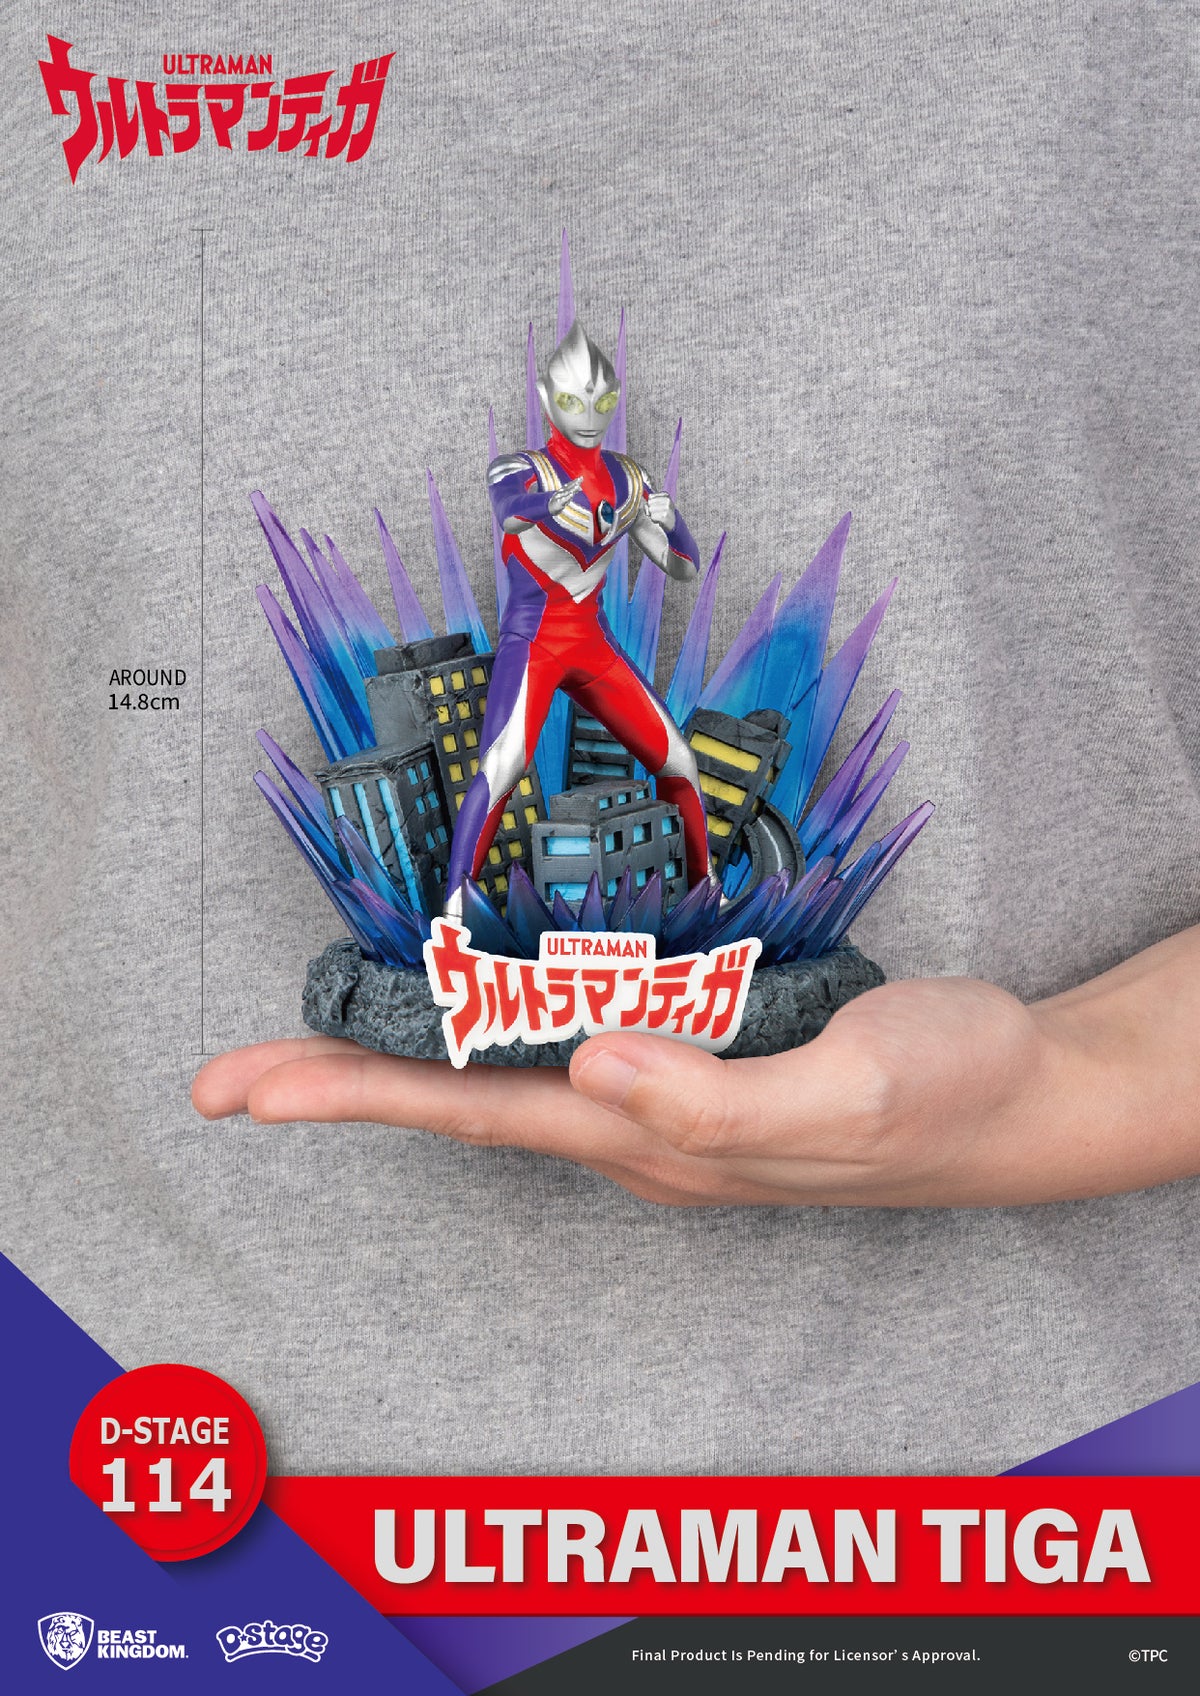 D-Stage Ultraman Tiga Statue - Beast Kingdom